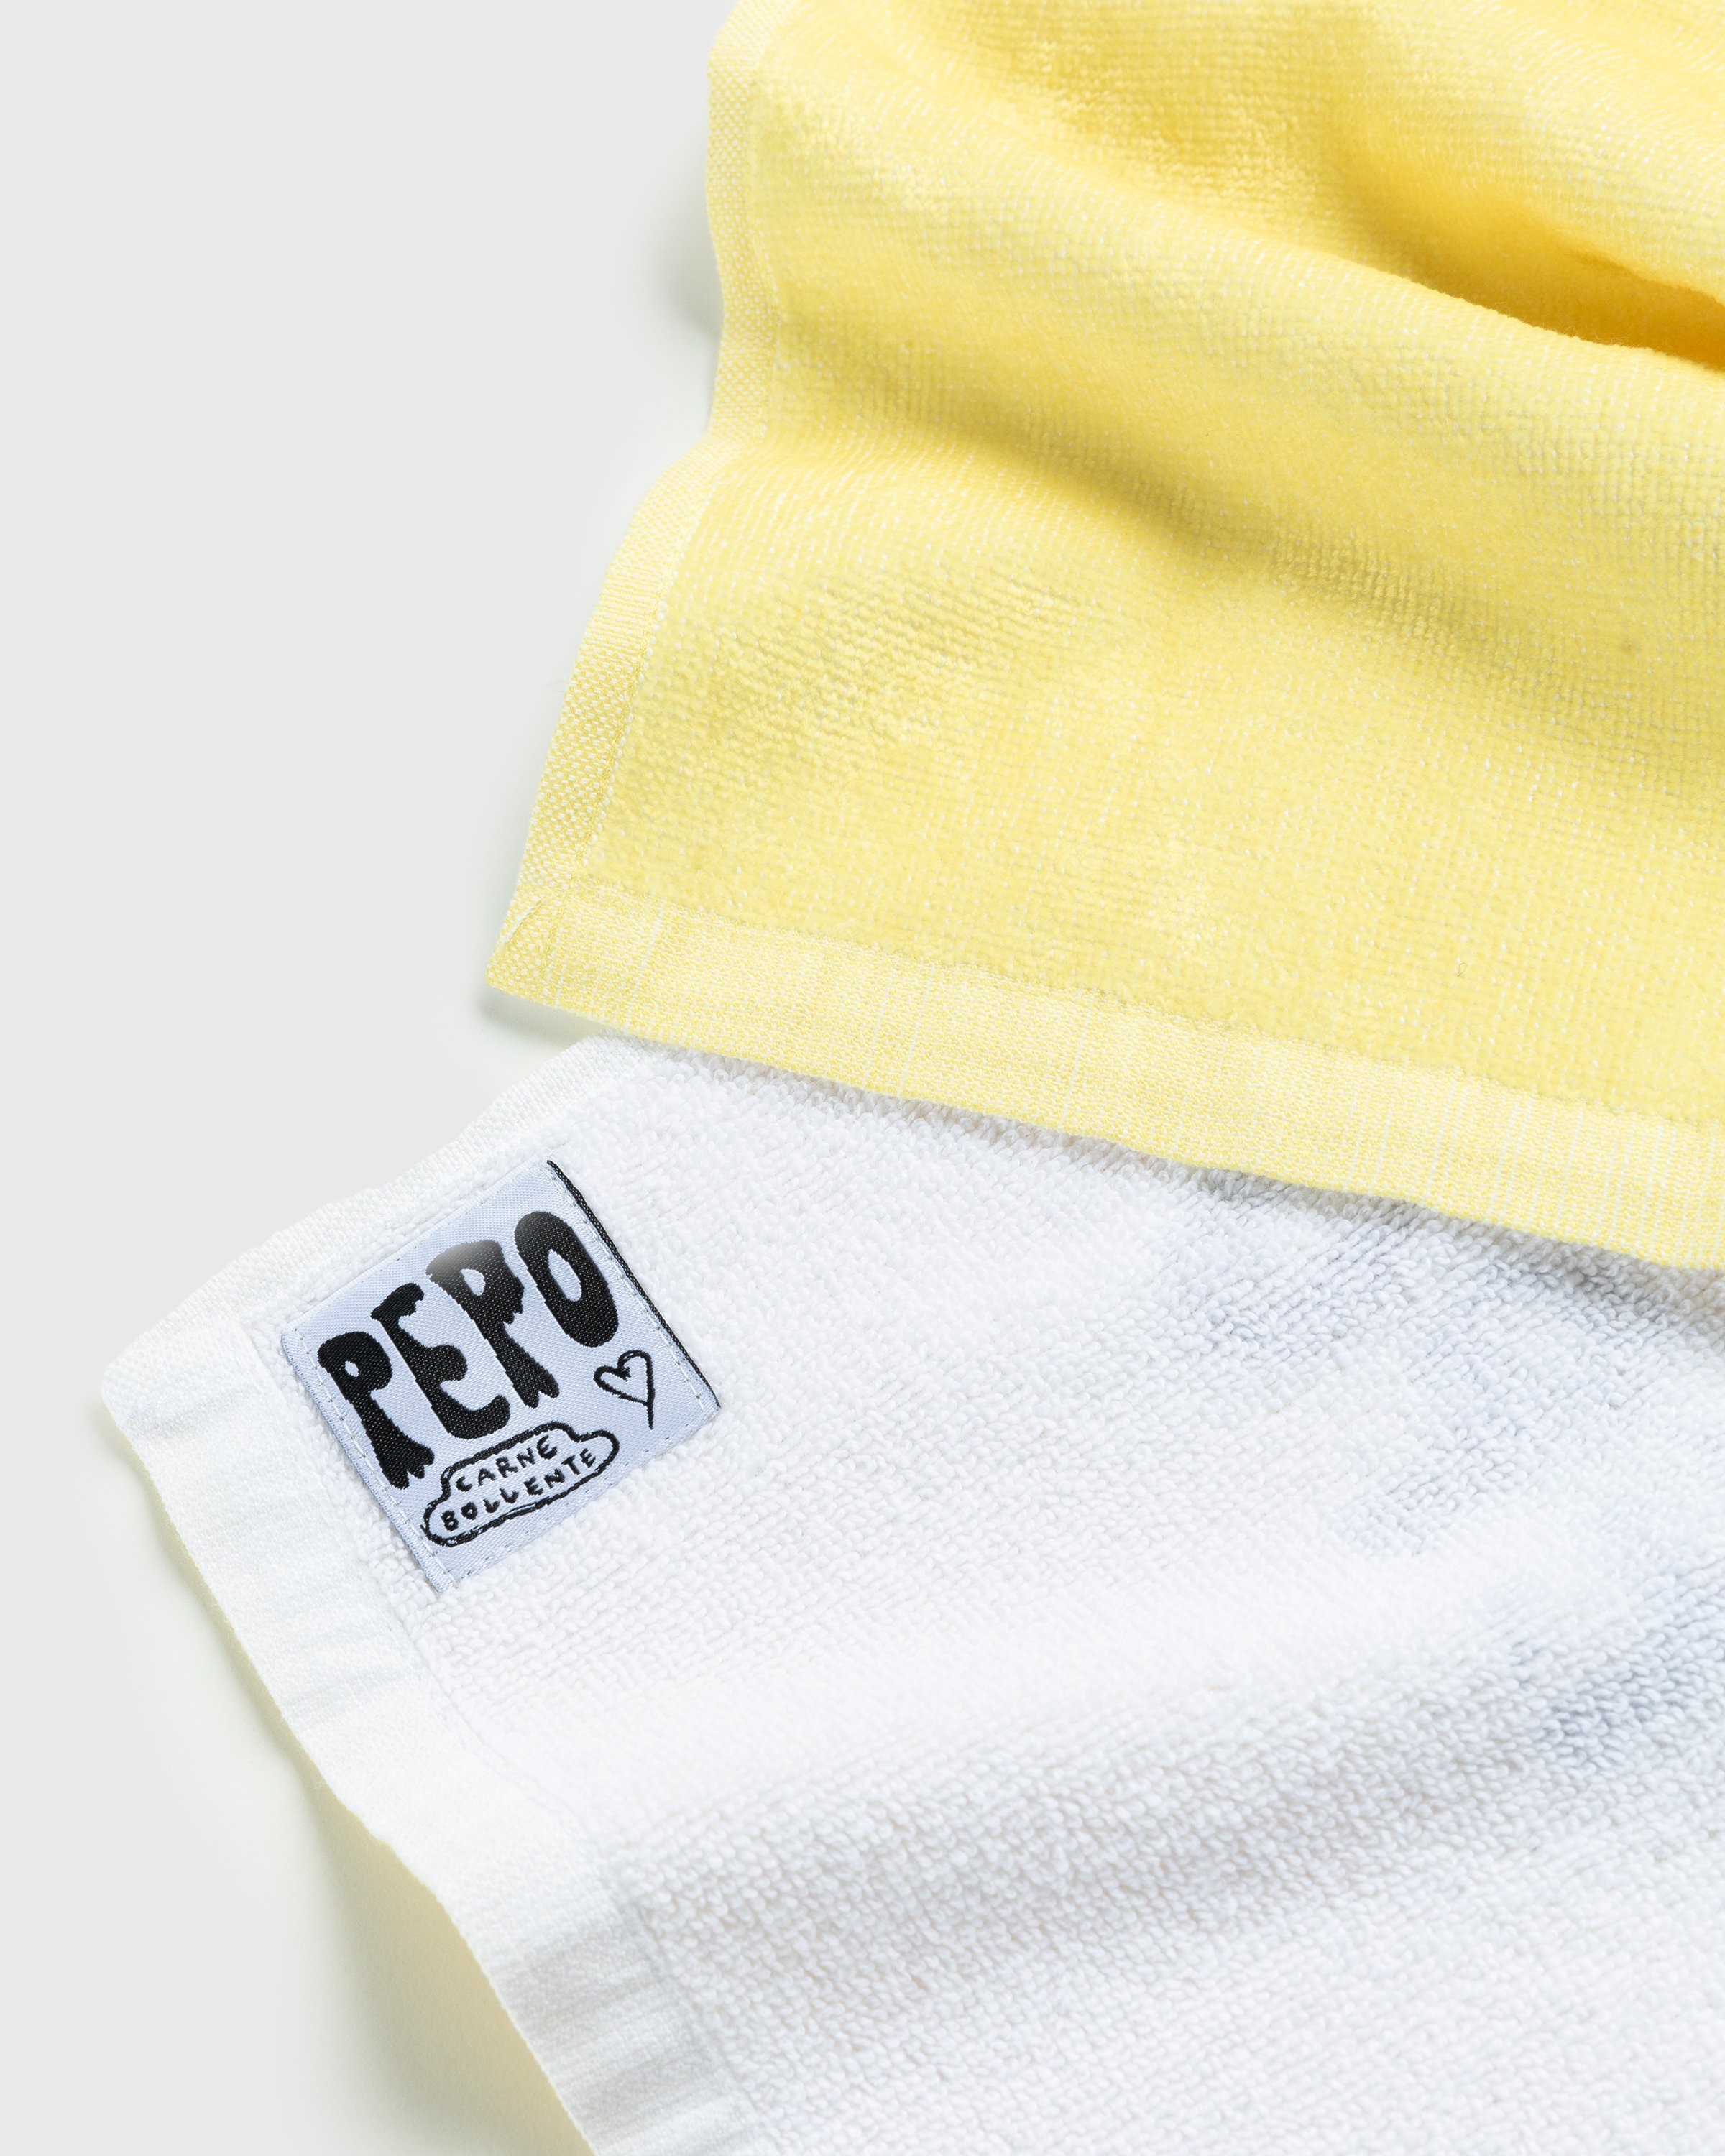 Carne Bollente - Pepo's Dream Towel Multi - Lifestyle - Brown - Image 3